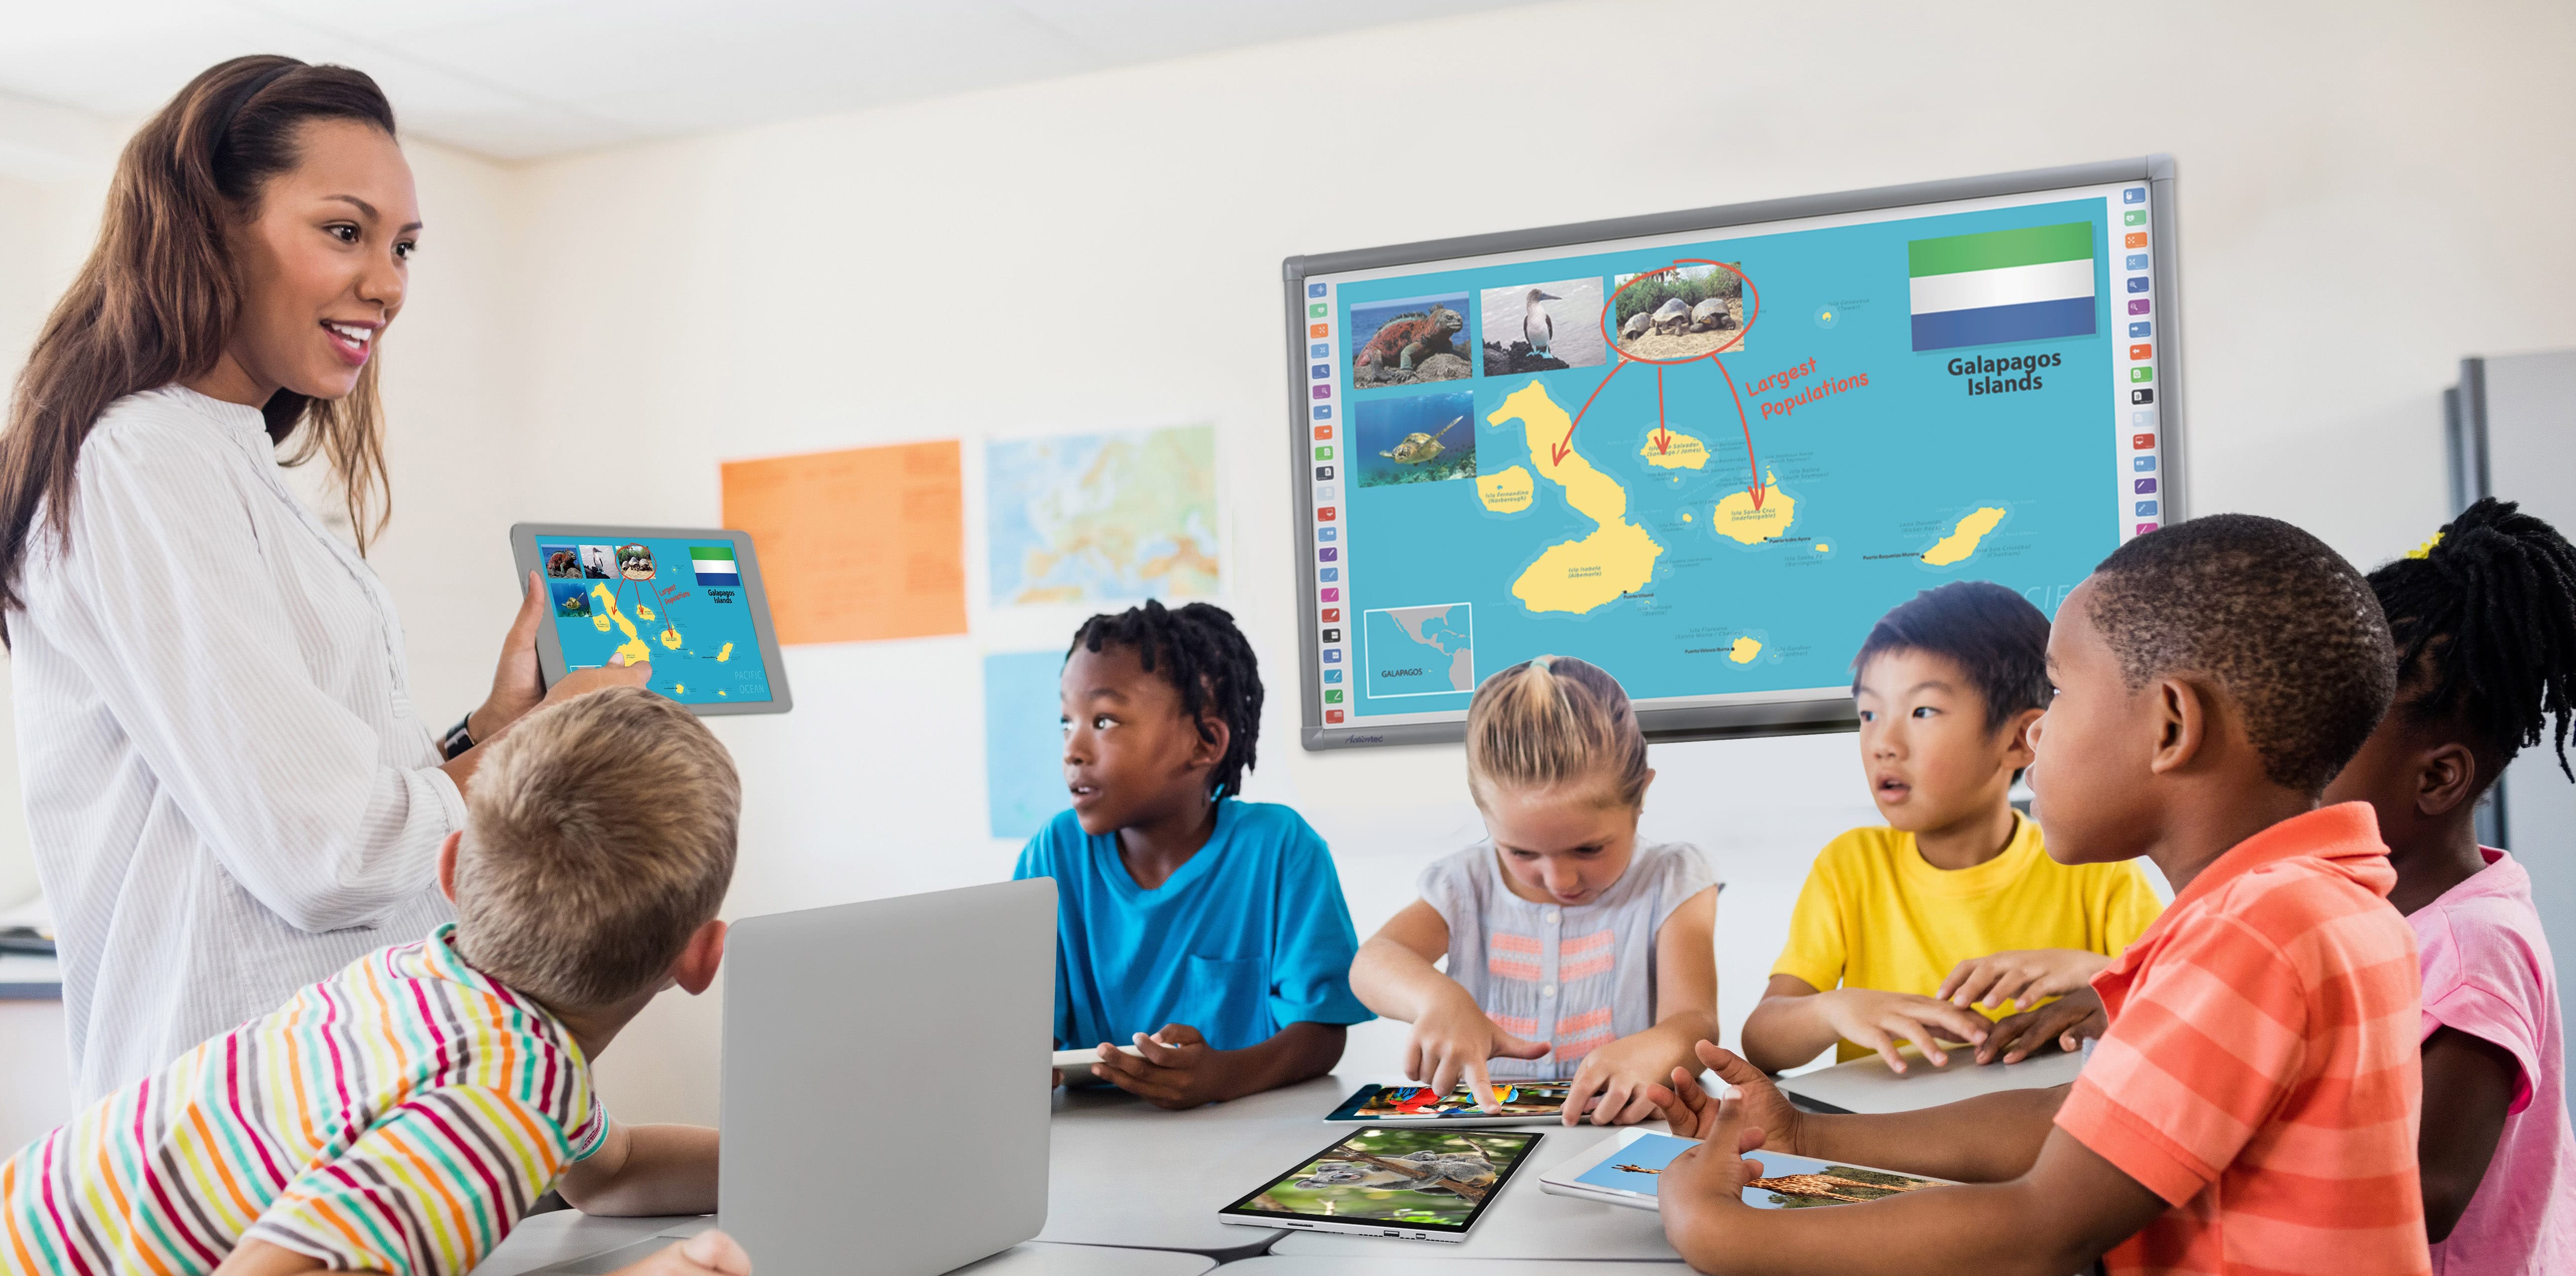 Classroomscreen : un outil précieux pour la classe – Un Prof D Z'écoles